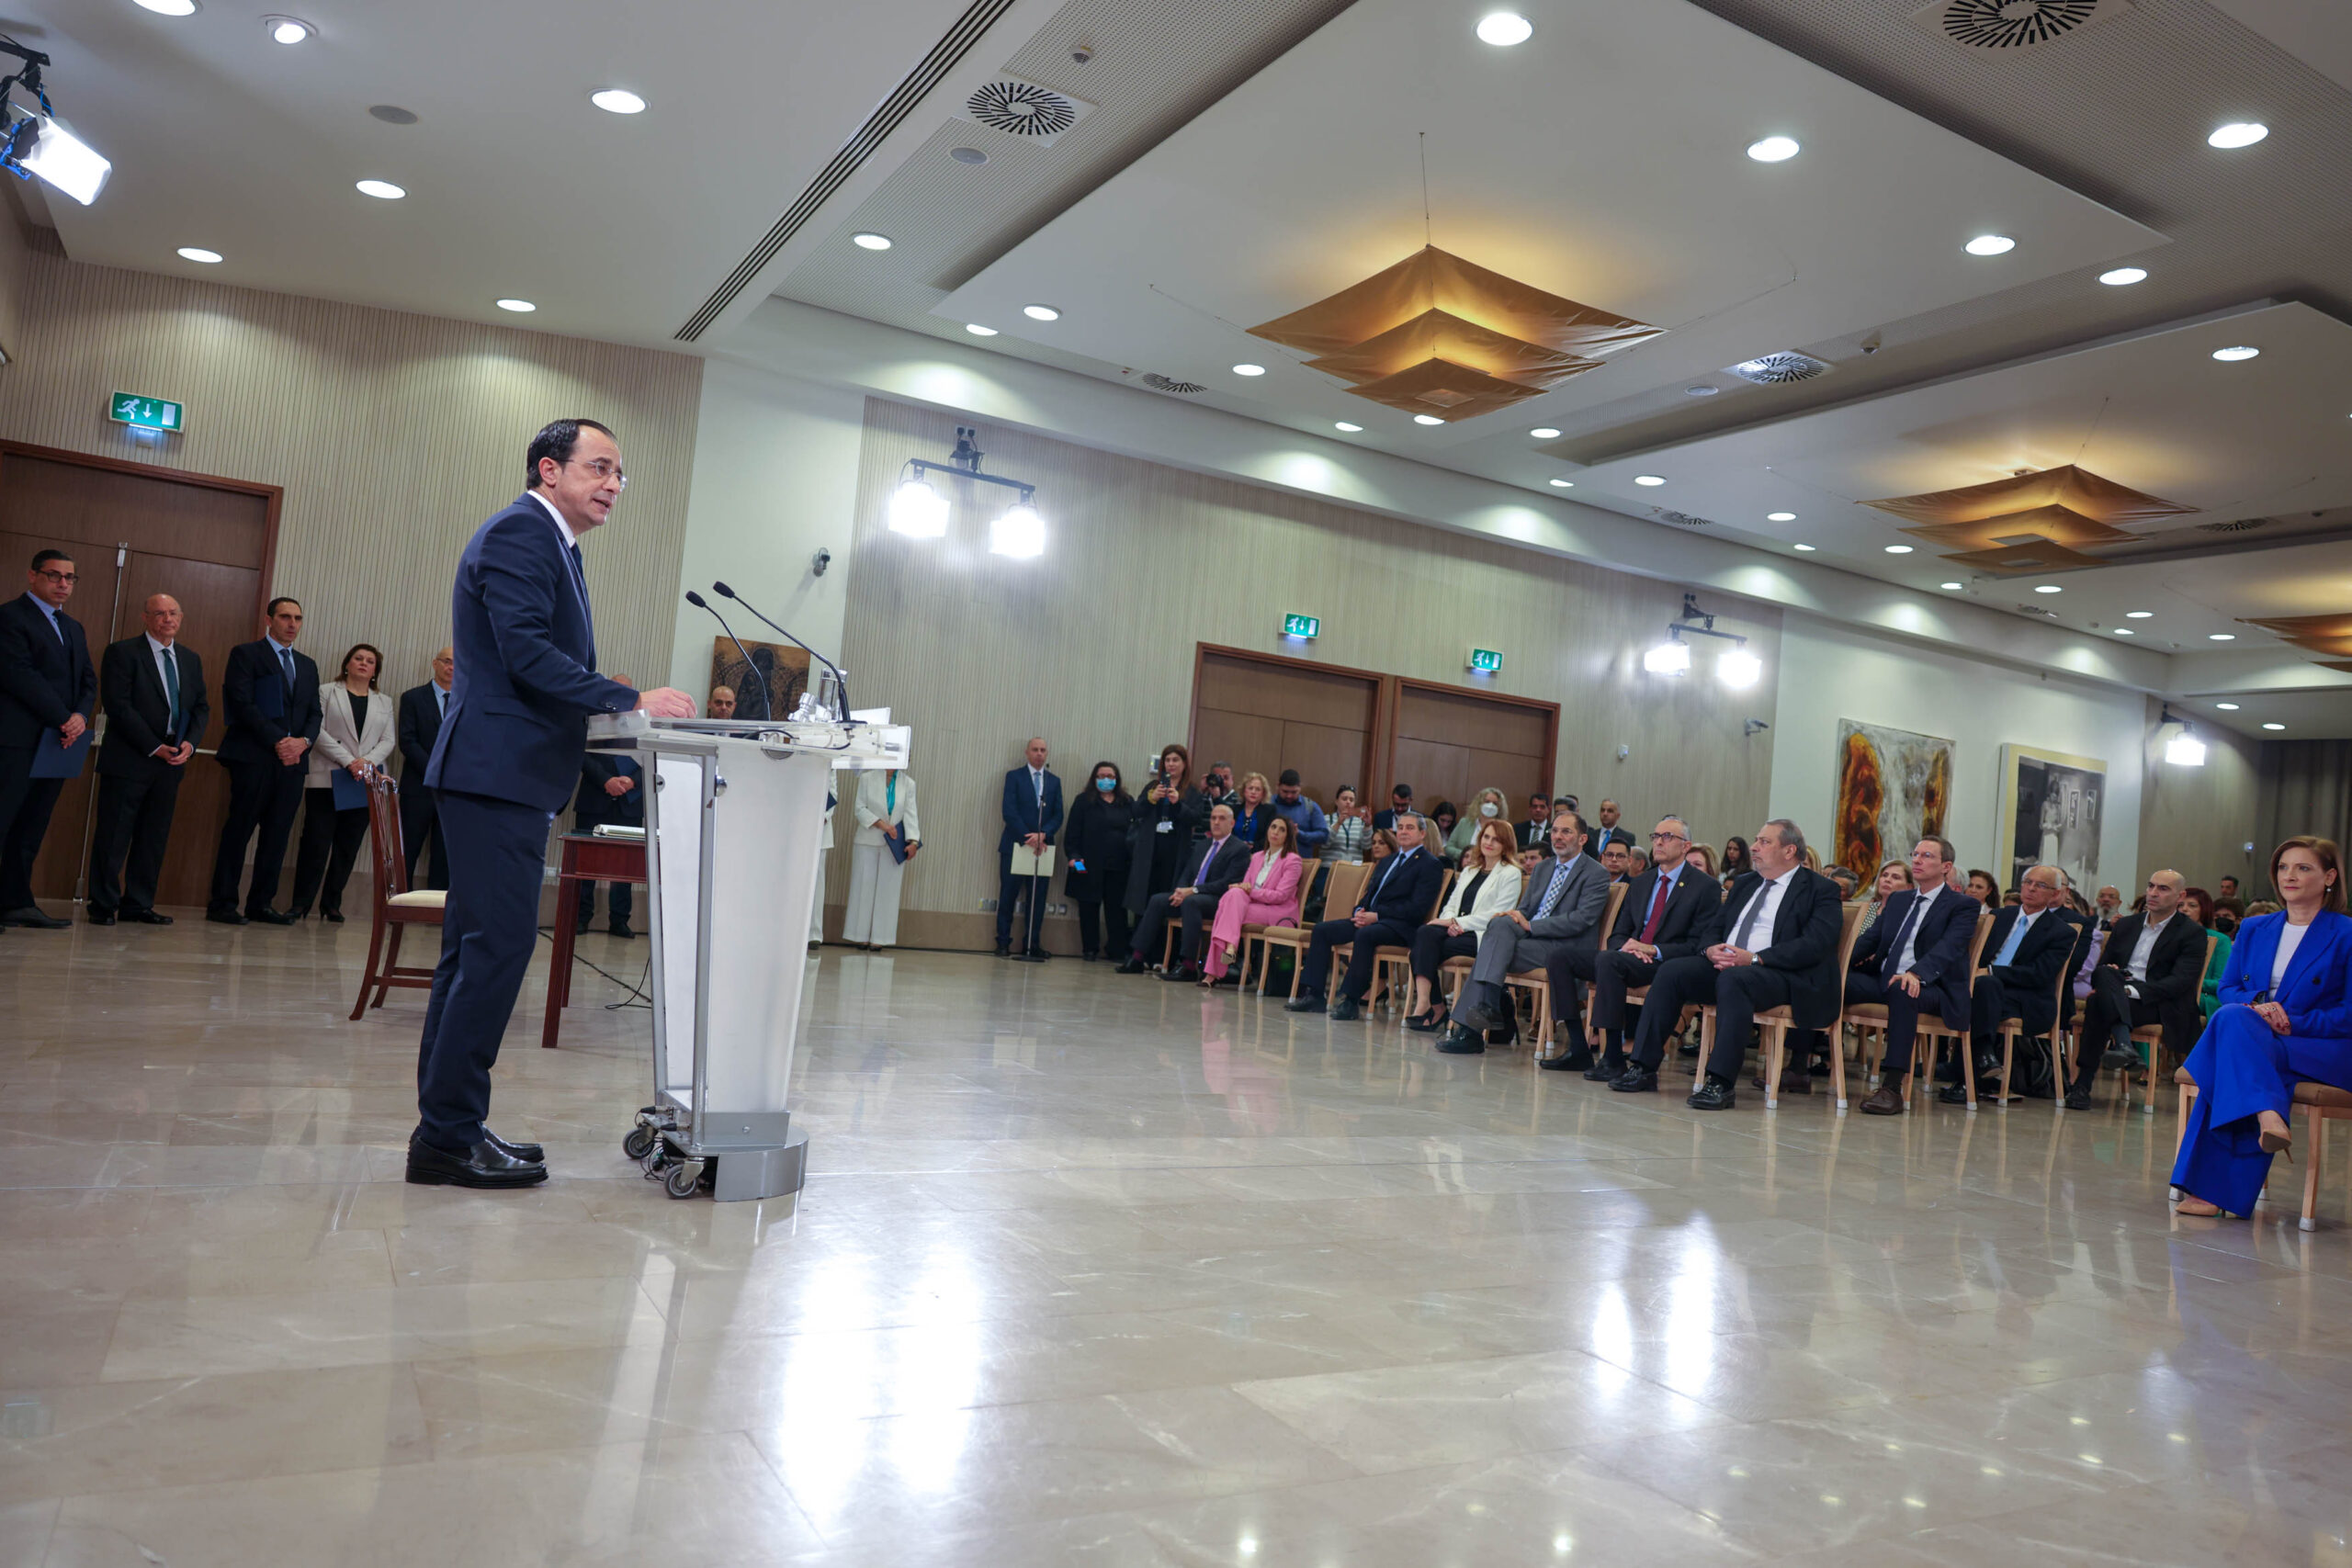 Πραγματοποιήθηκε η πρώτη συνεδρίαση του νέου Υπουργικού υπό τον Πρόεδρο της Δημοκρατίας κ. Νίκο Χριστοδουλίδη